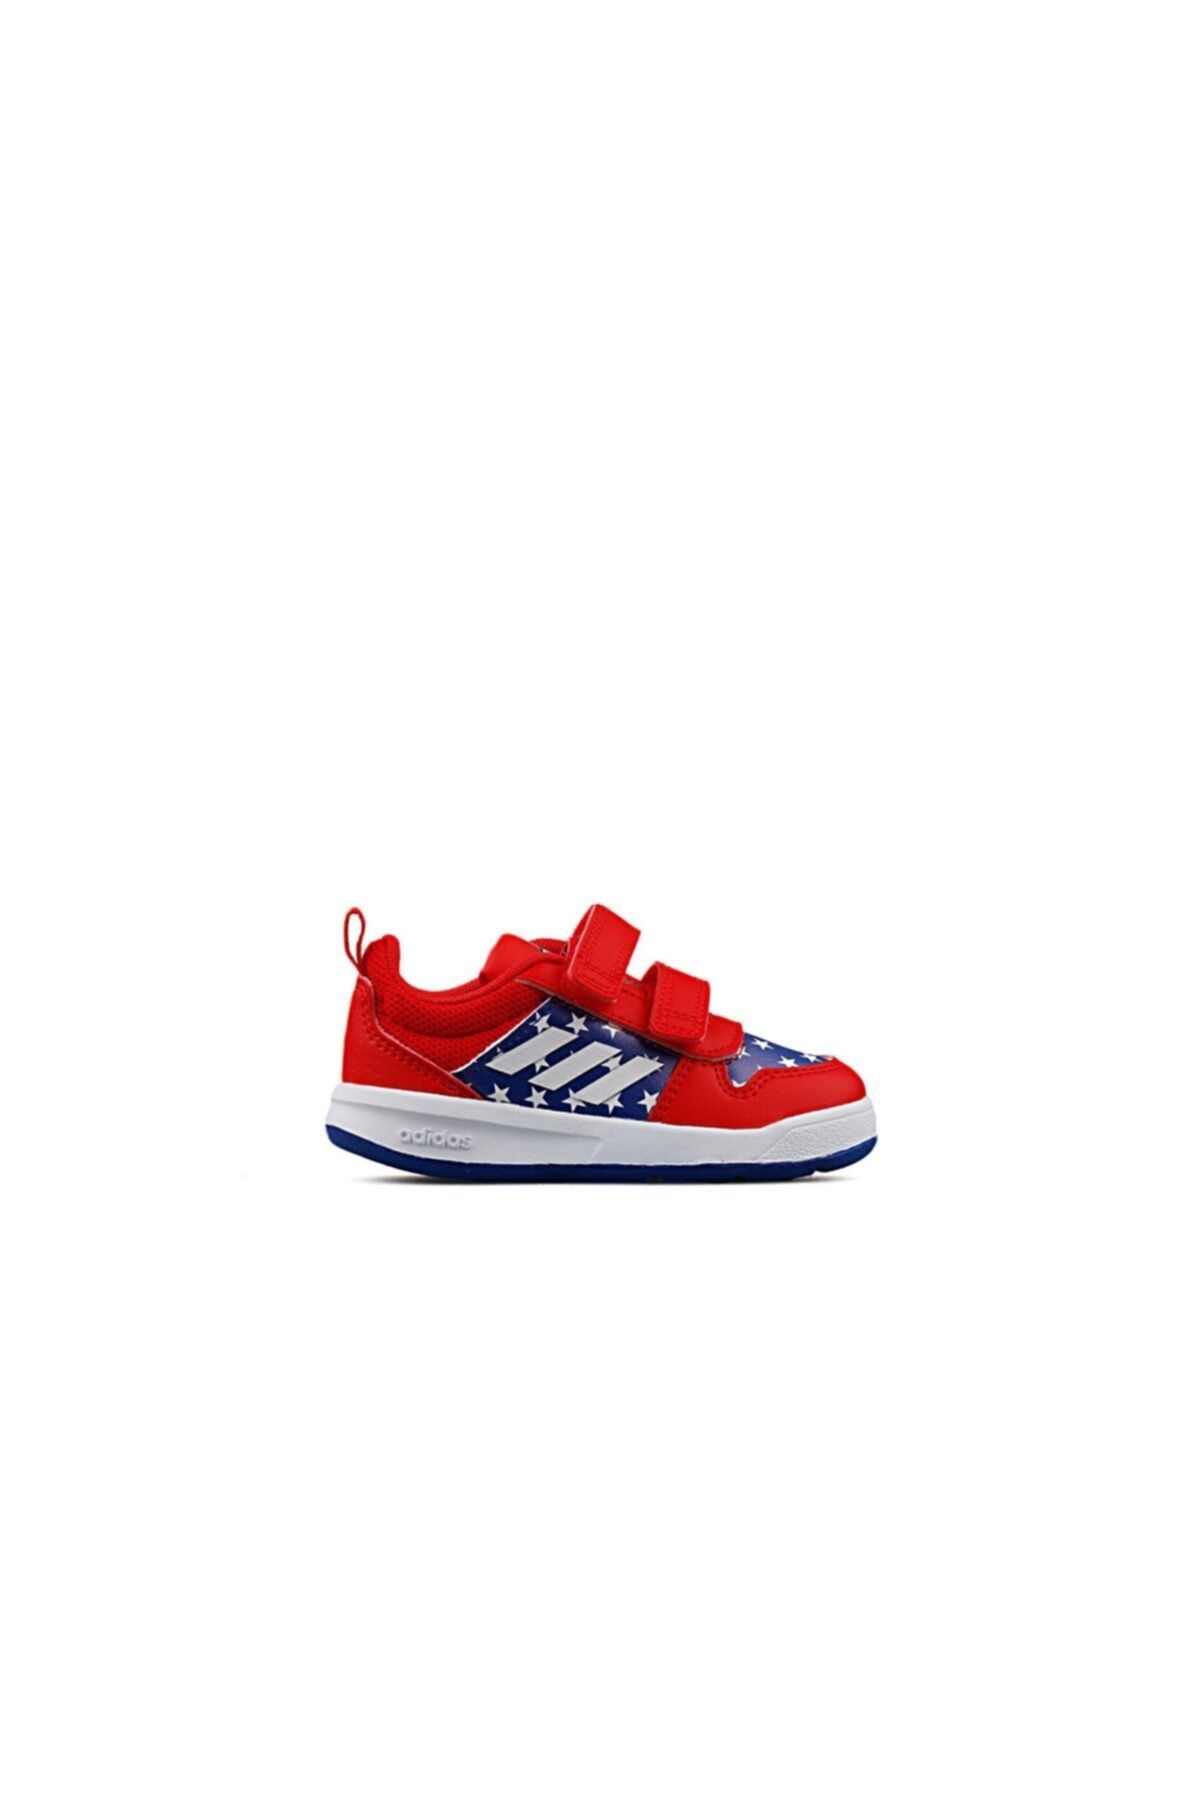 adidas ADİDAS kırmızı Tensaur I Bebek Günlük Ayakkabı Fy9193 Kırmızı